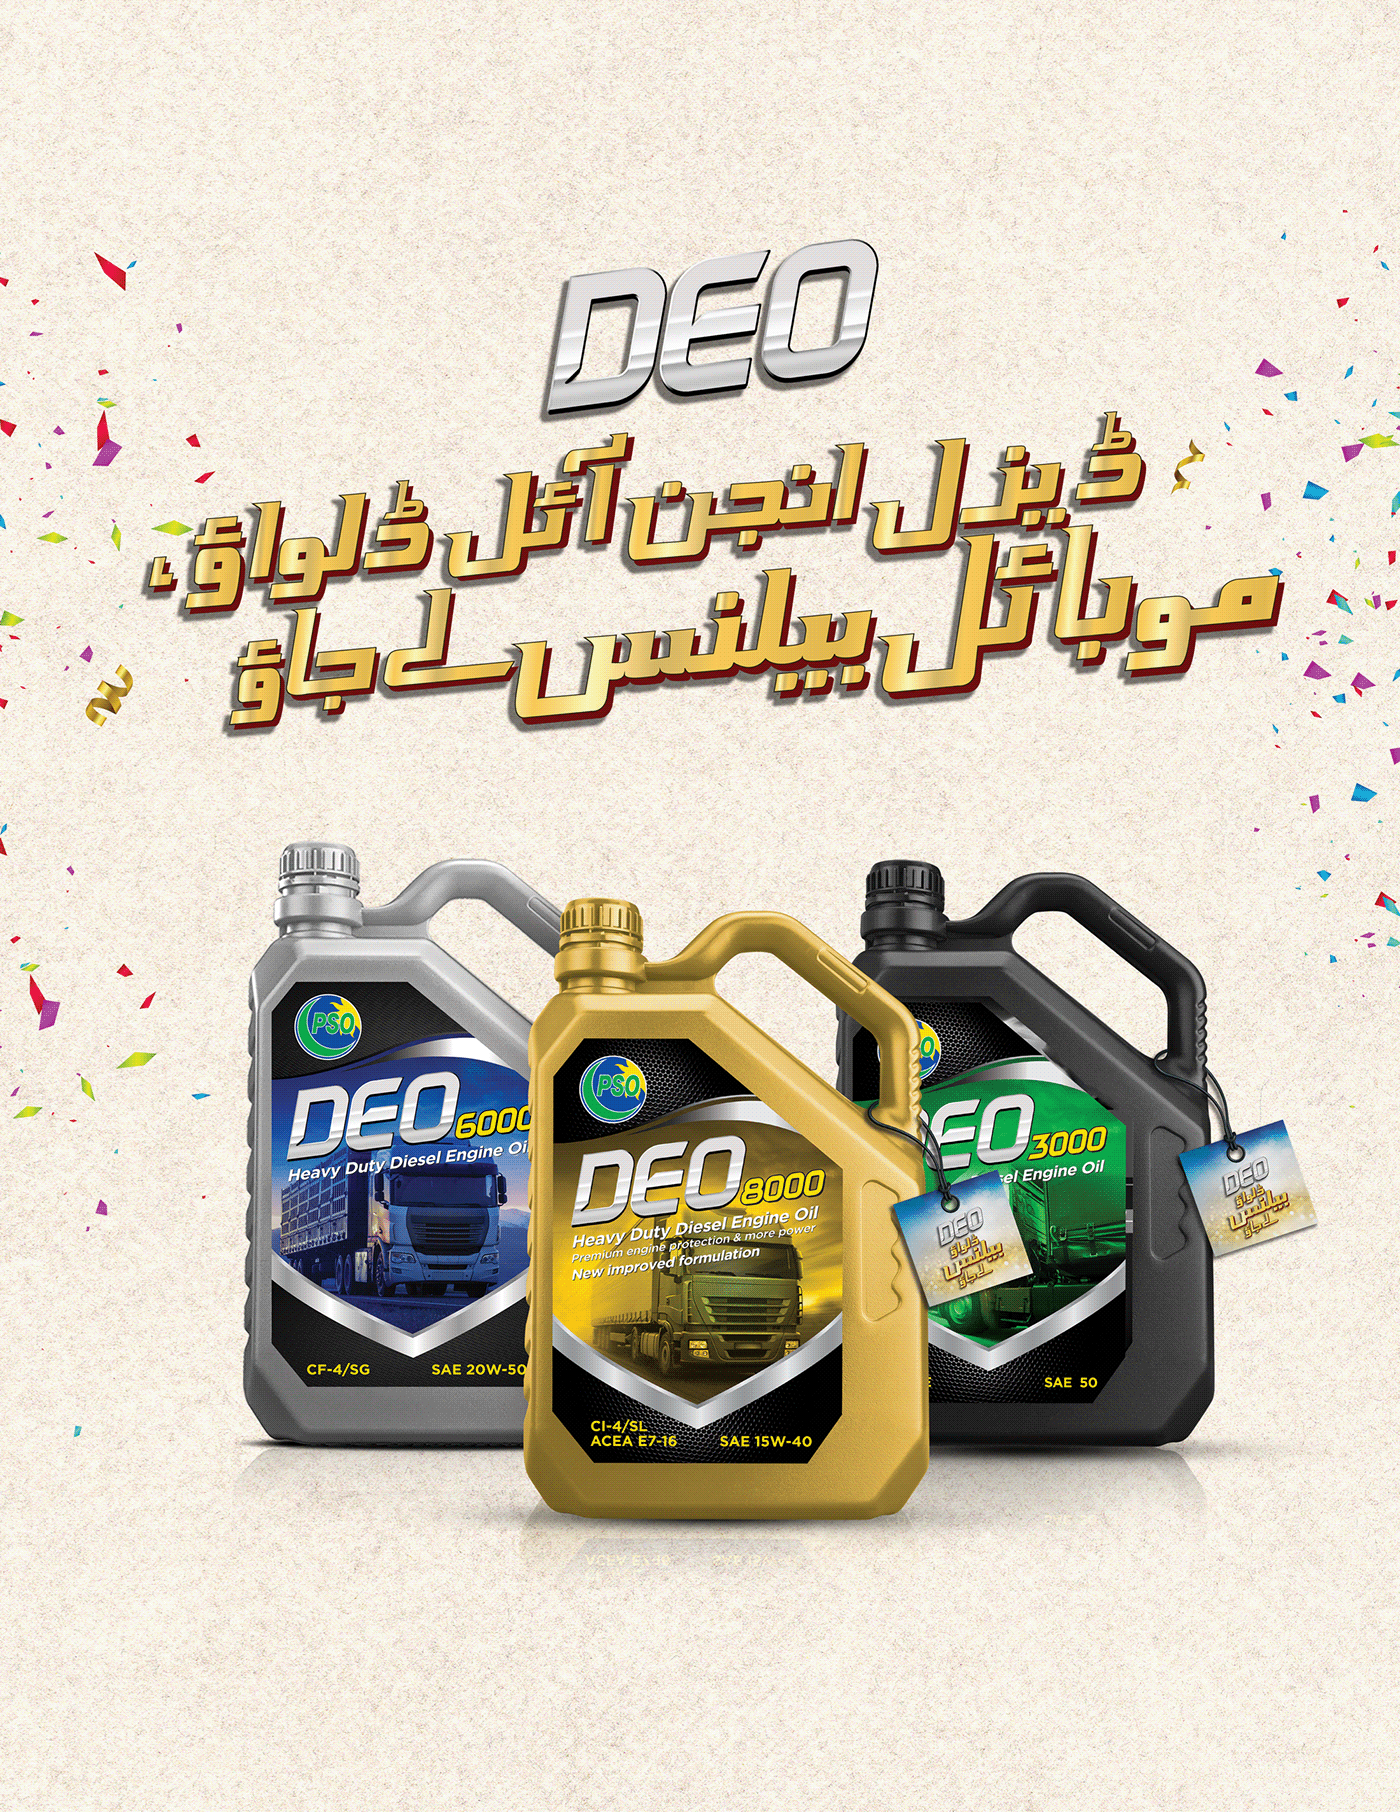 PSO Diesel engine mobile Pack packaging design Promotion urdu Pakistan DEO